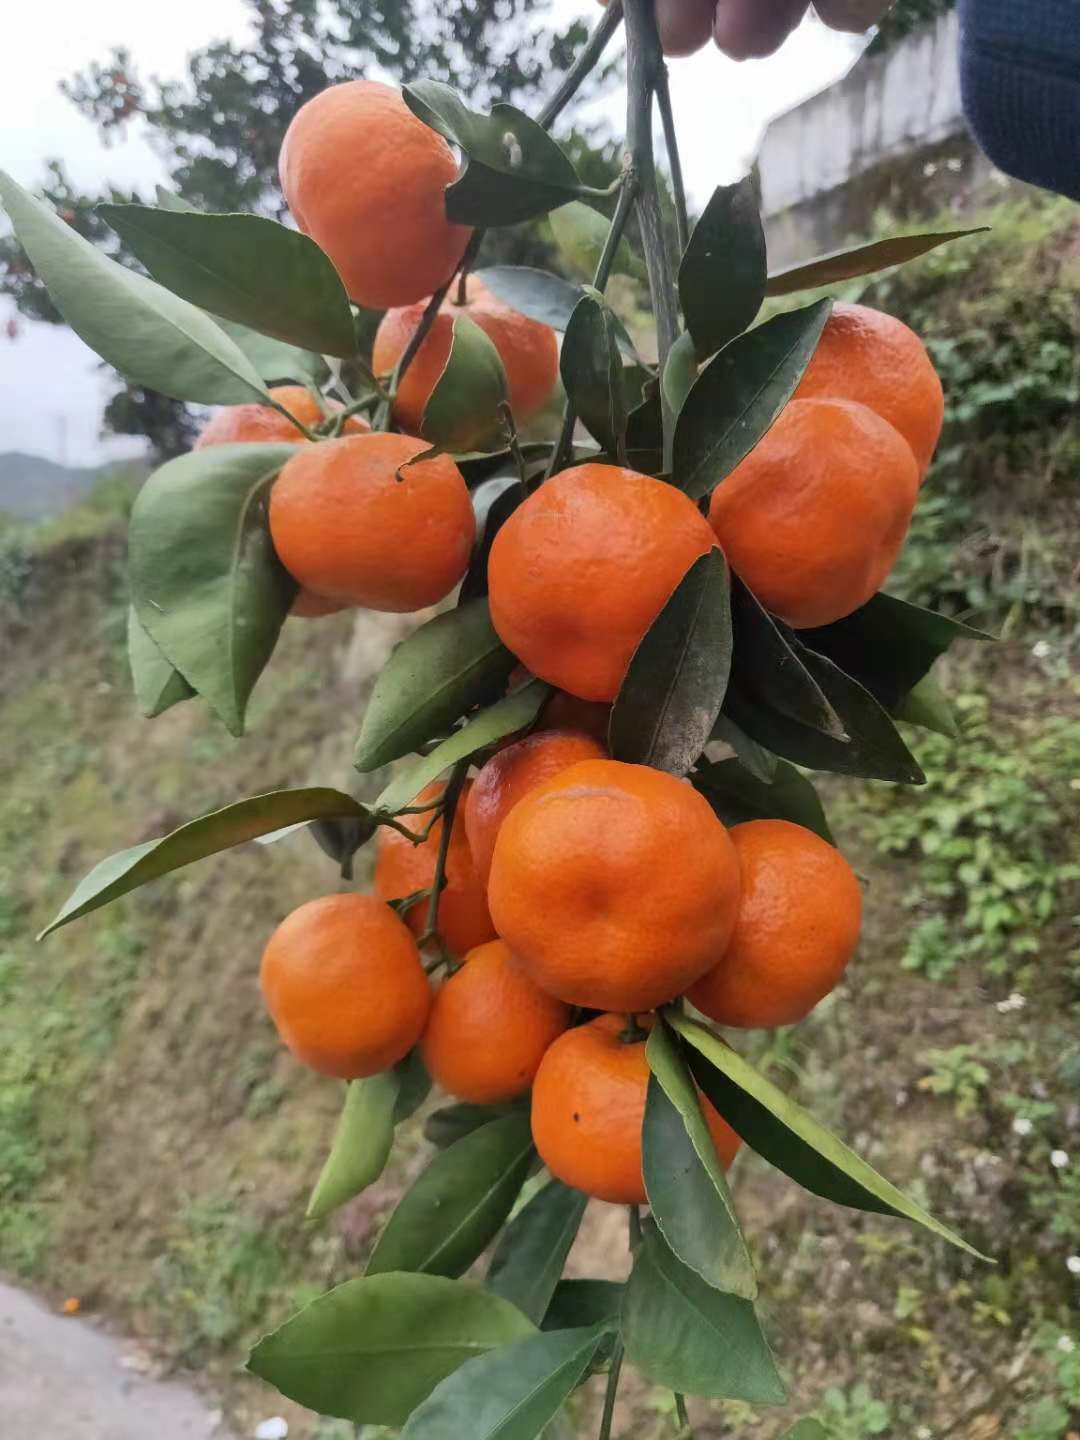 贵州余庆县满溪红金桔红军橘密桔柑子适合各类人群品尝 11月中旬开始